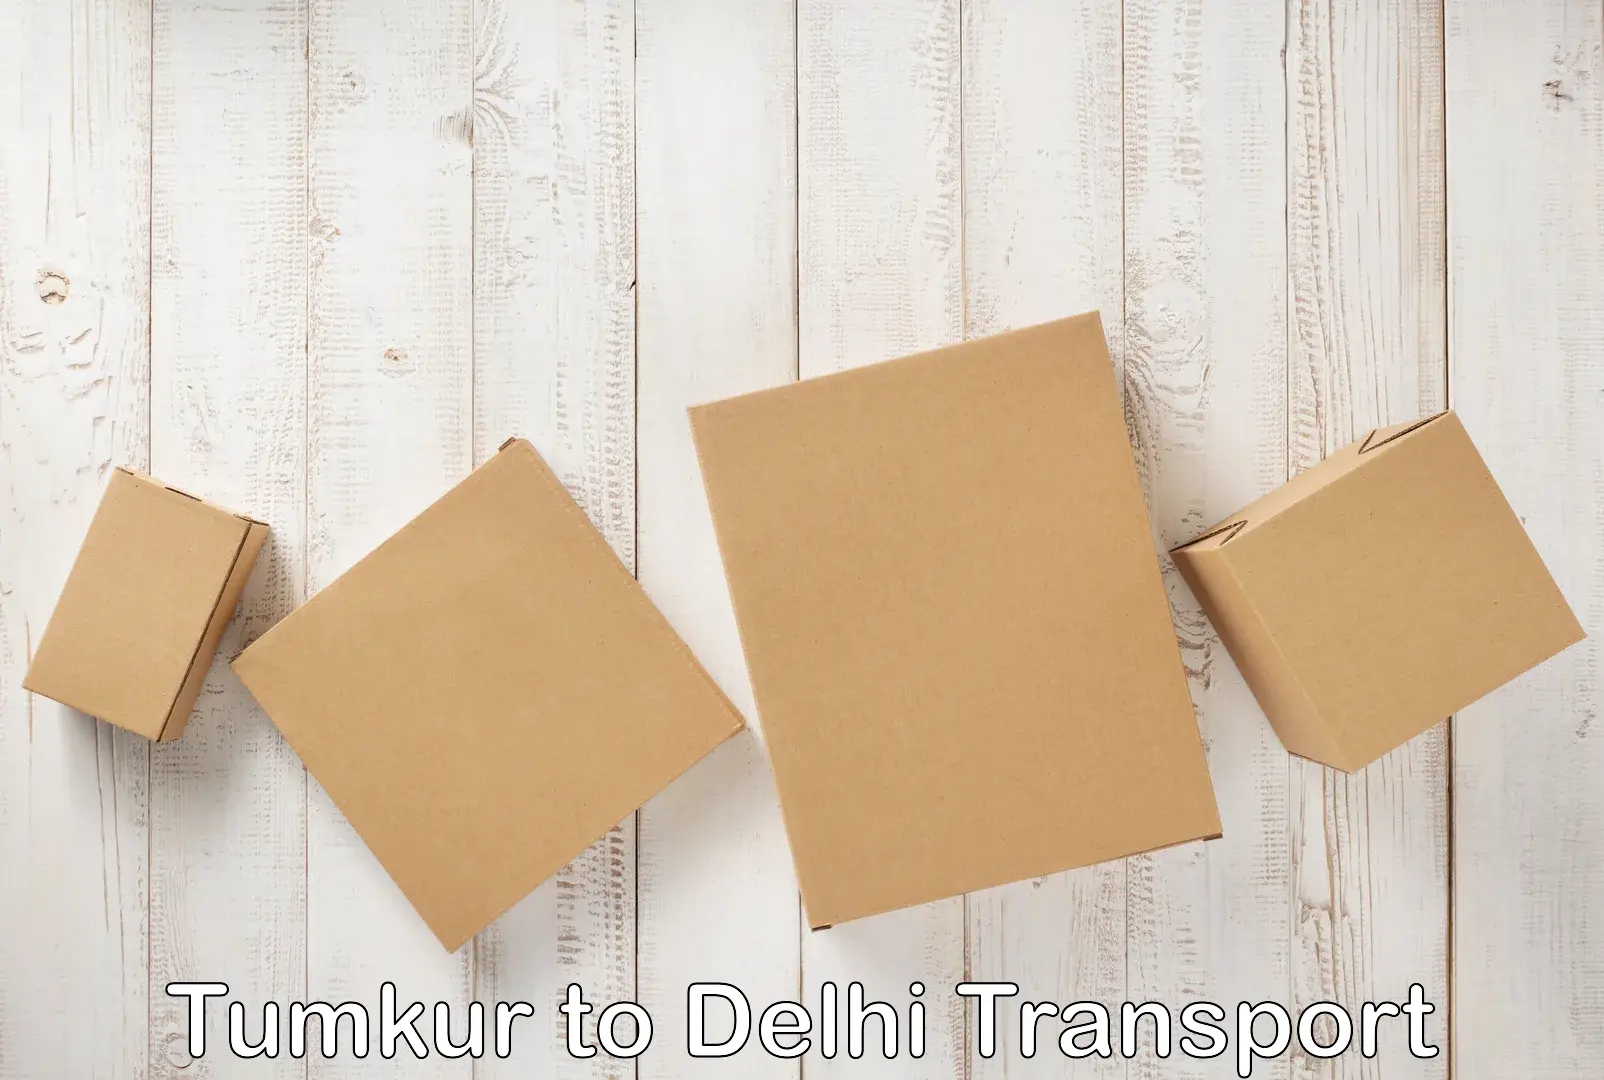 Container transport service Tumkur to Delhi